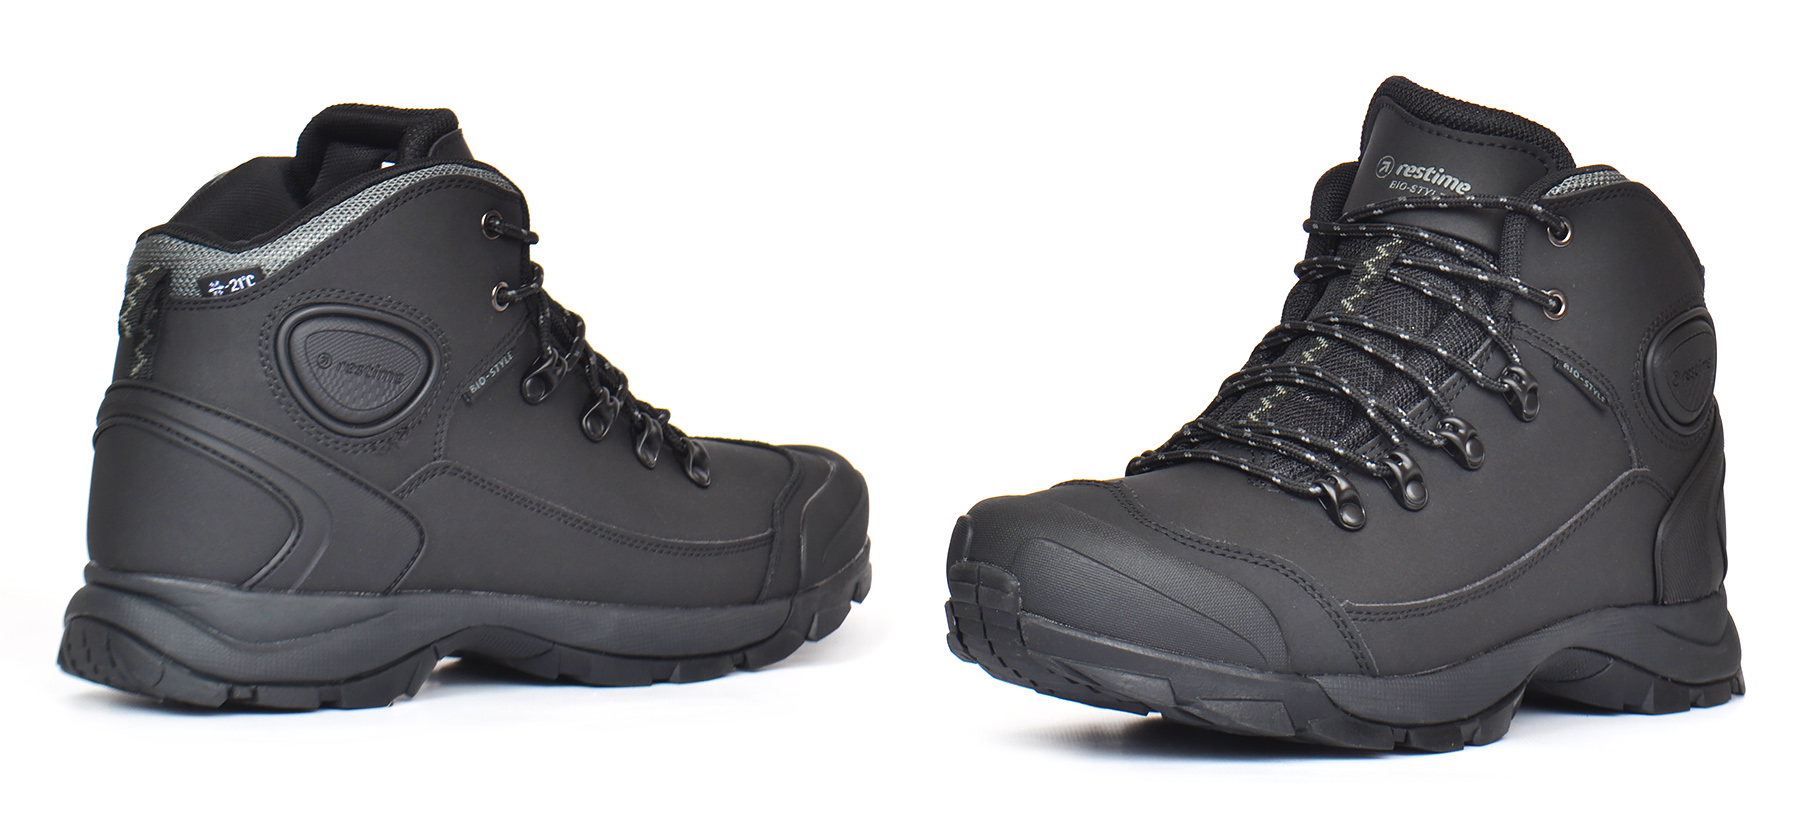 Мужские трекинговые кожаные термо ботинки с защитой носка Restime черные купить в Украине